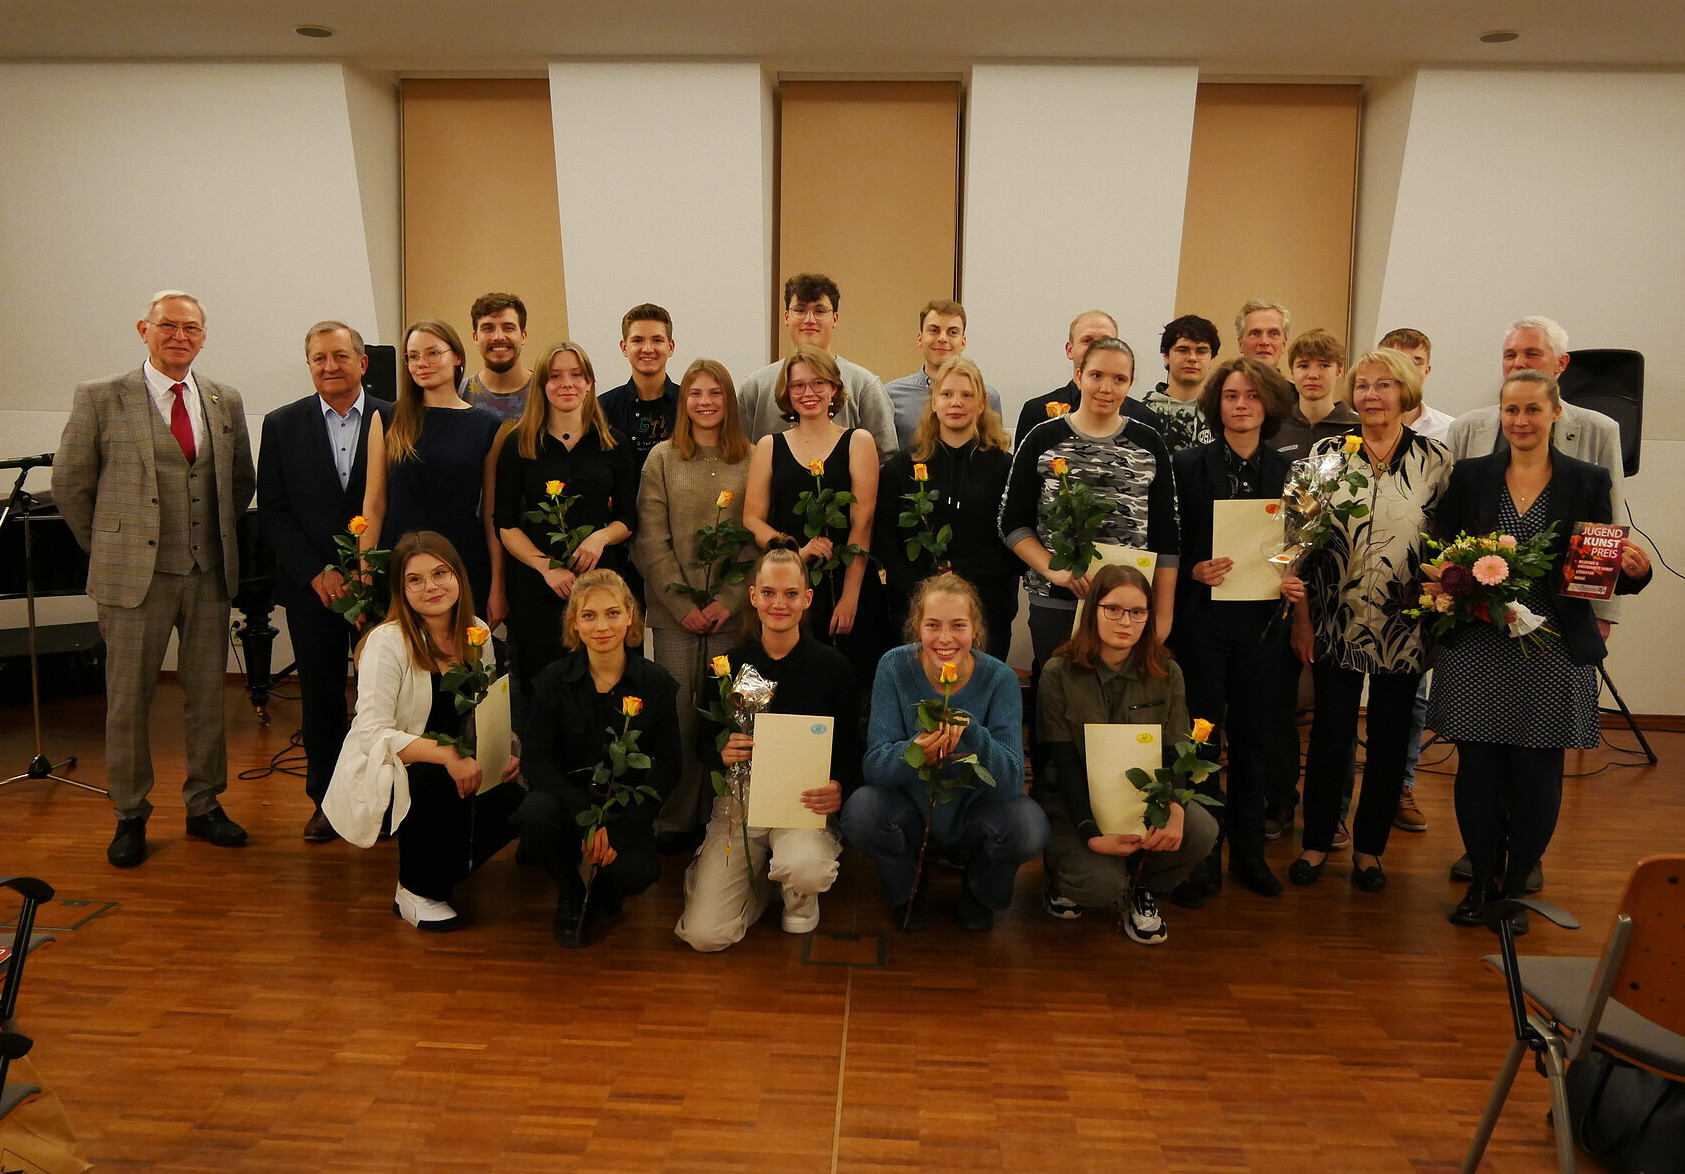 Gruppenbild der Preisträger des Jugendkunstpreises